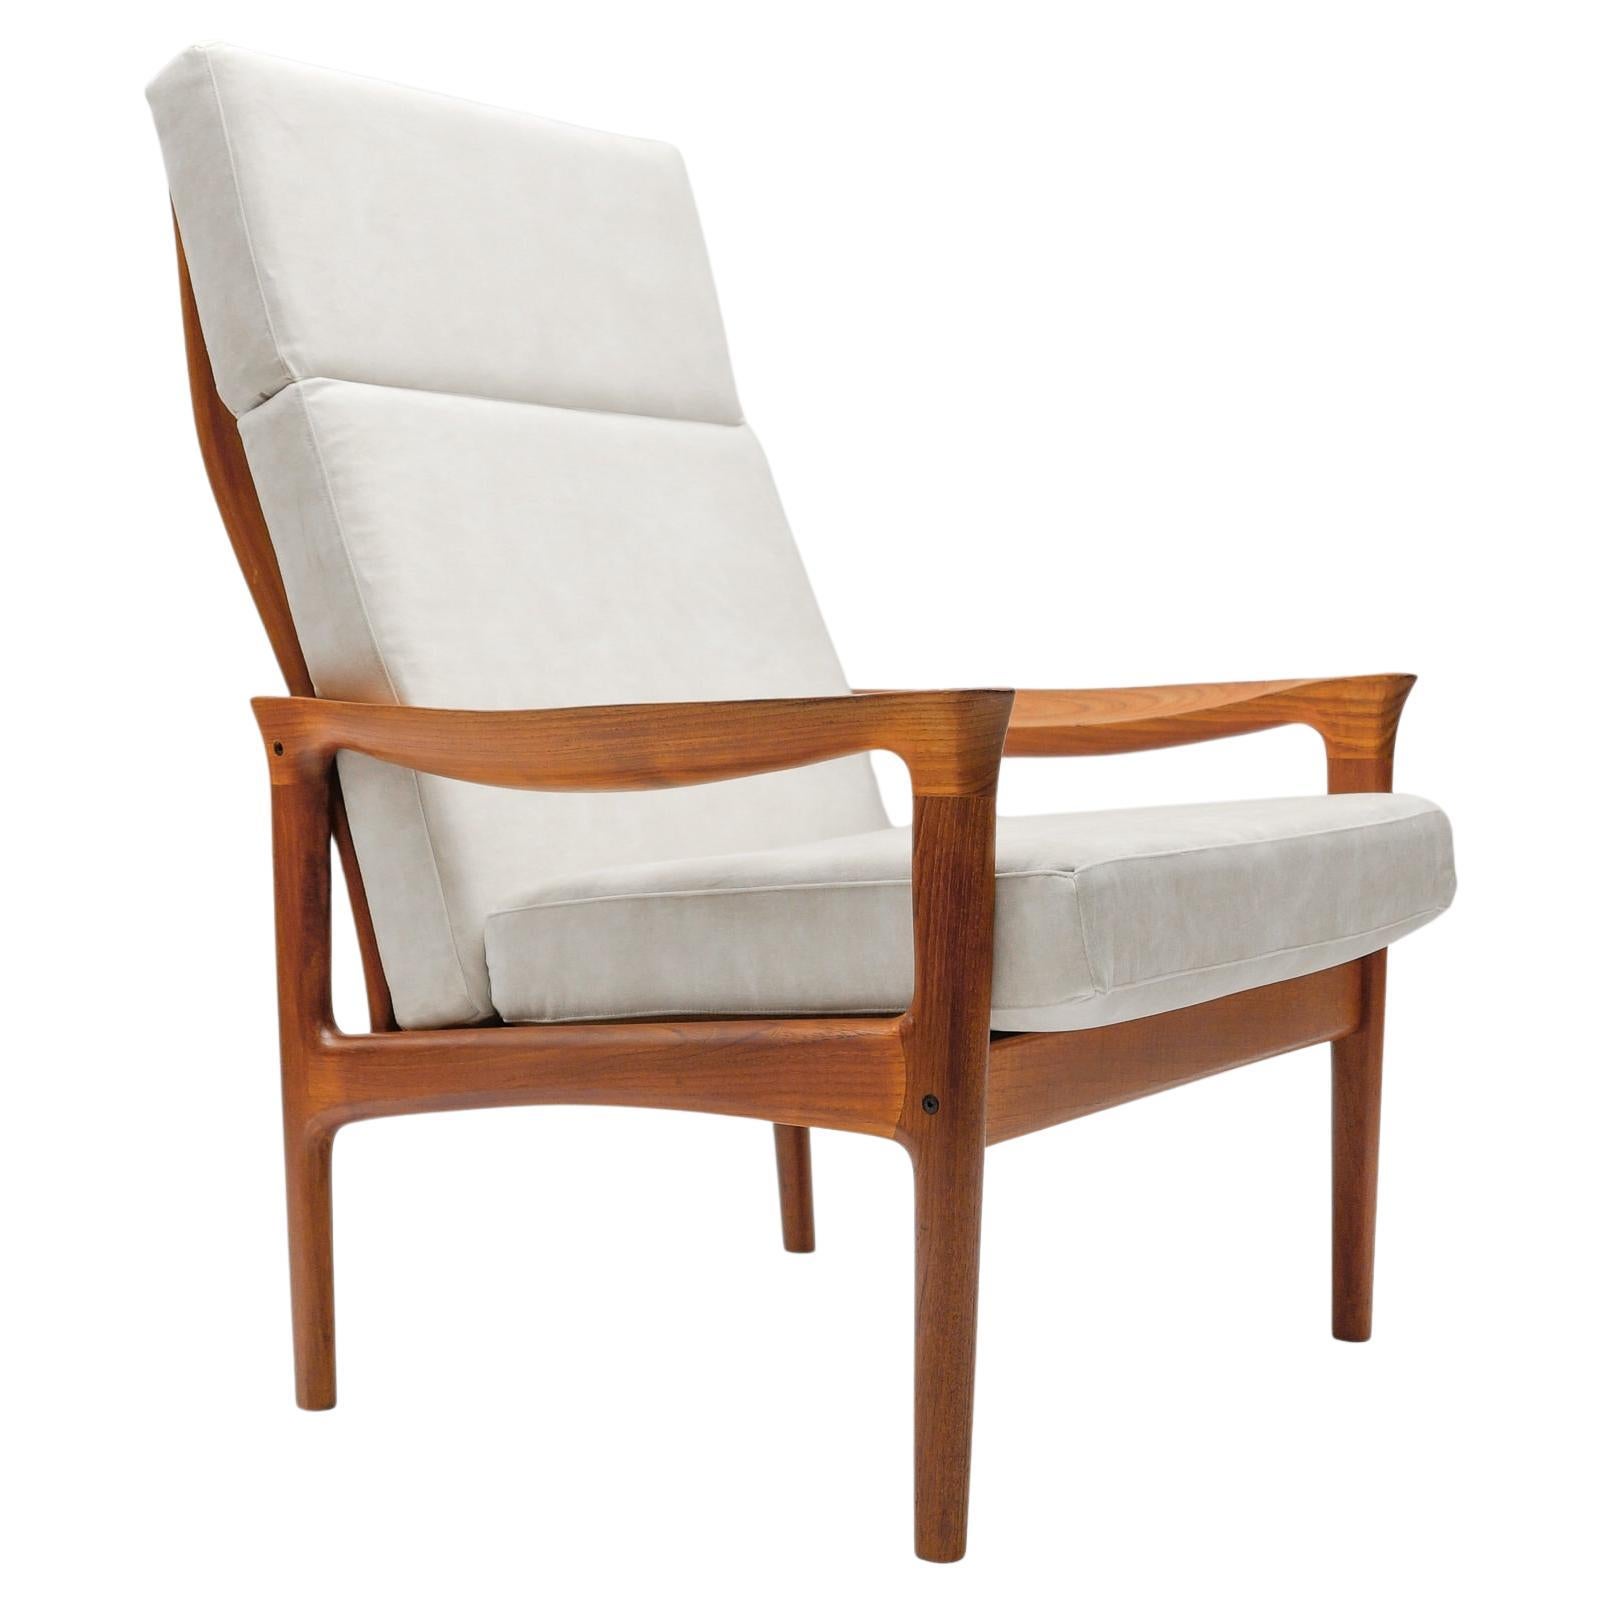 Teak High-Back Armchair, Newly Upholstered, 1960s Denmark For Sale